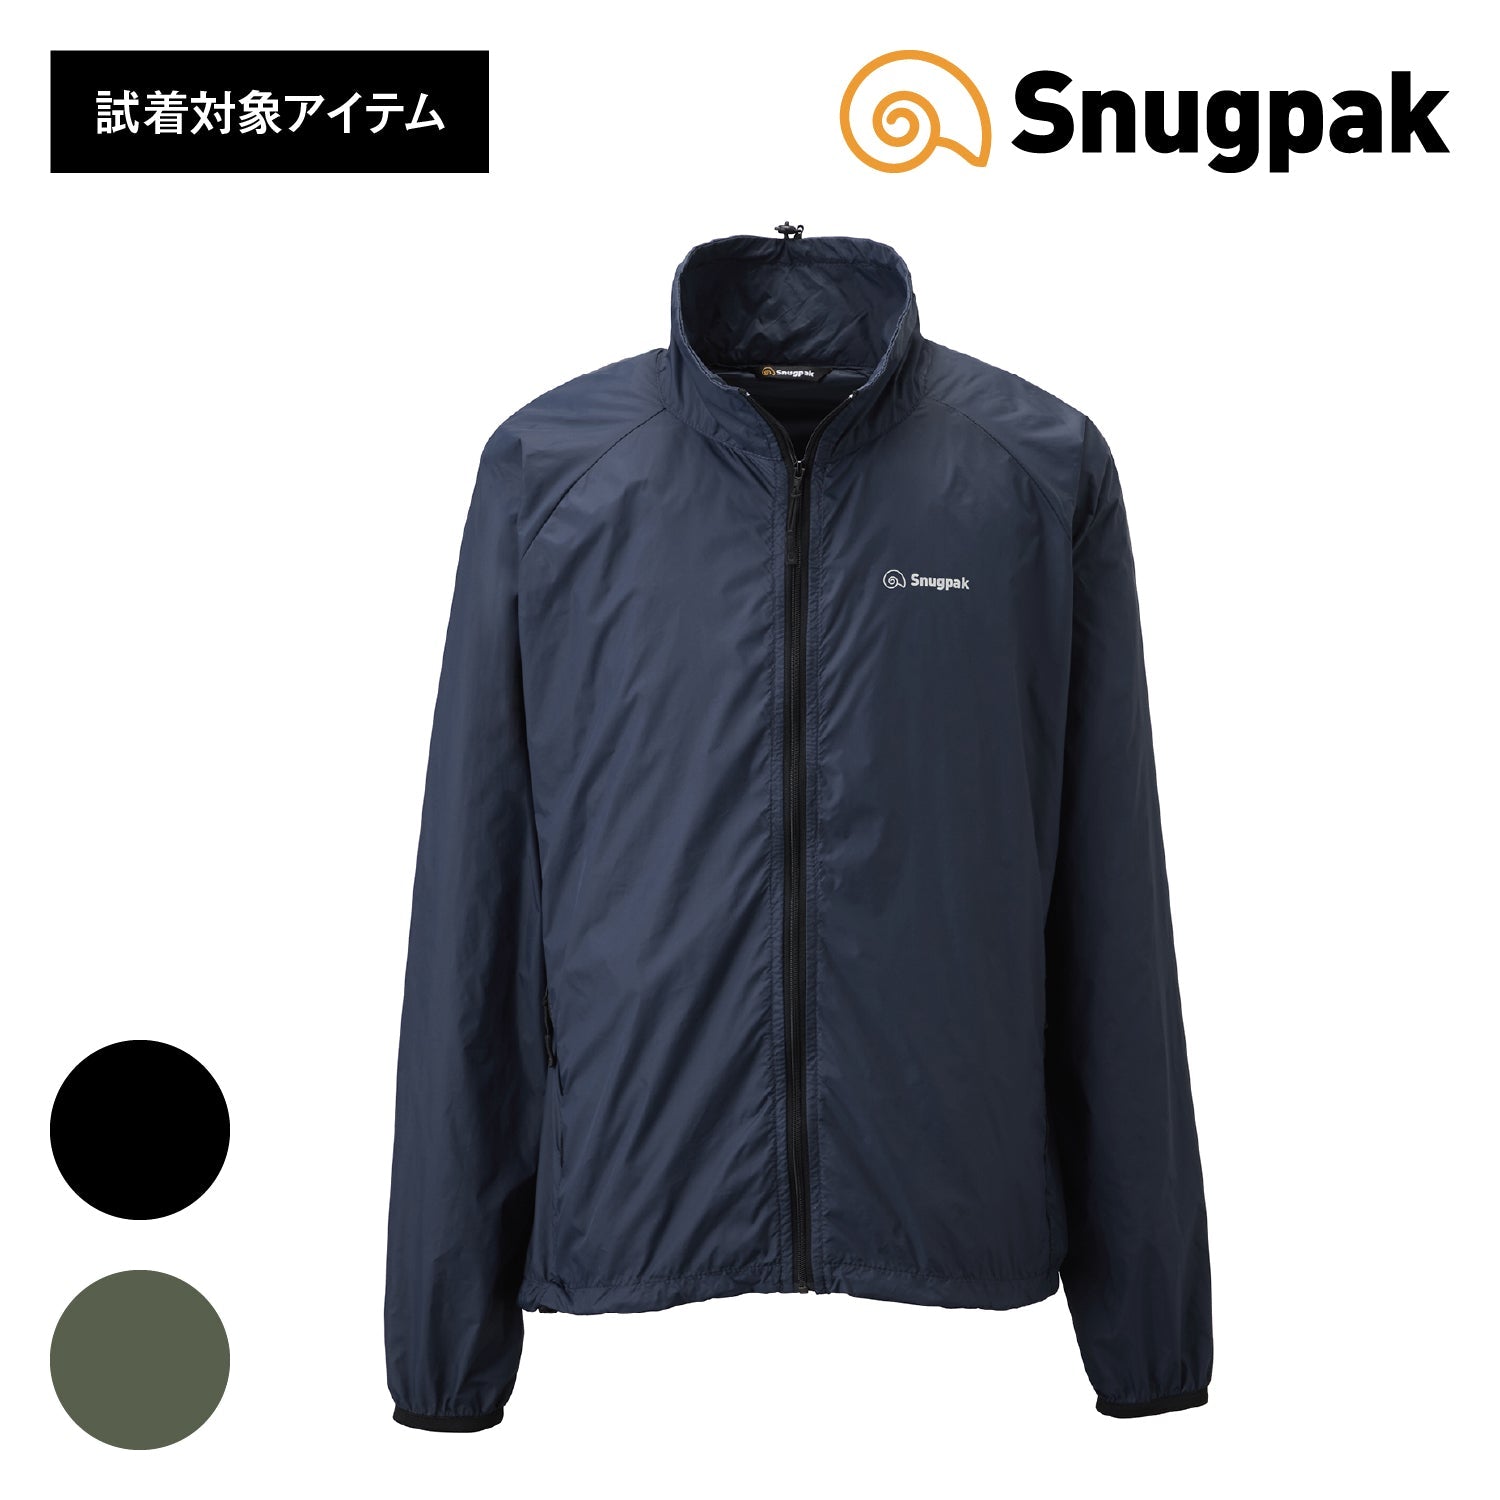 [50%OFF]Snugpak(スナグパック) ベーパーアクティブジャケット (単色) - ビッグウイングオンラインストア